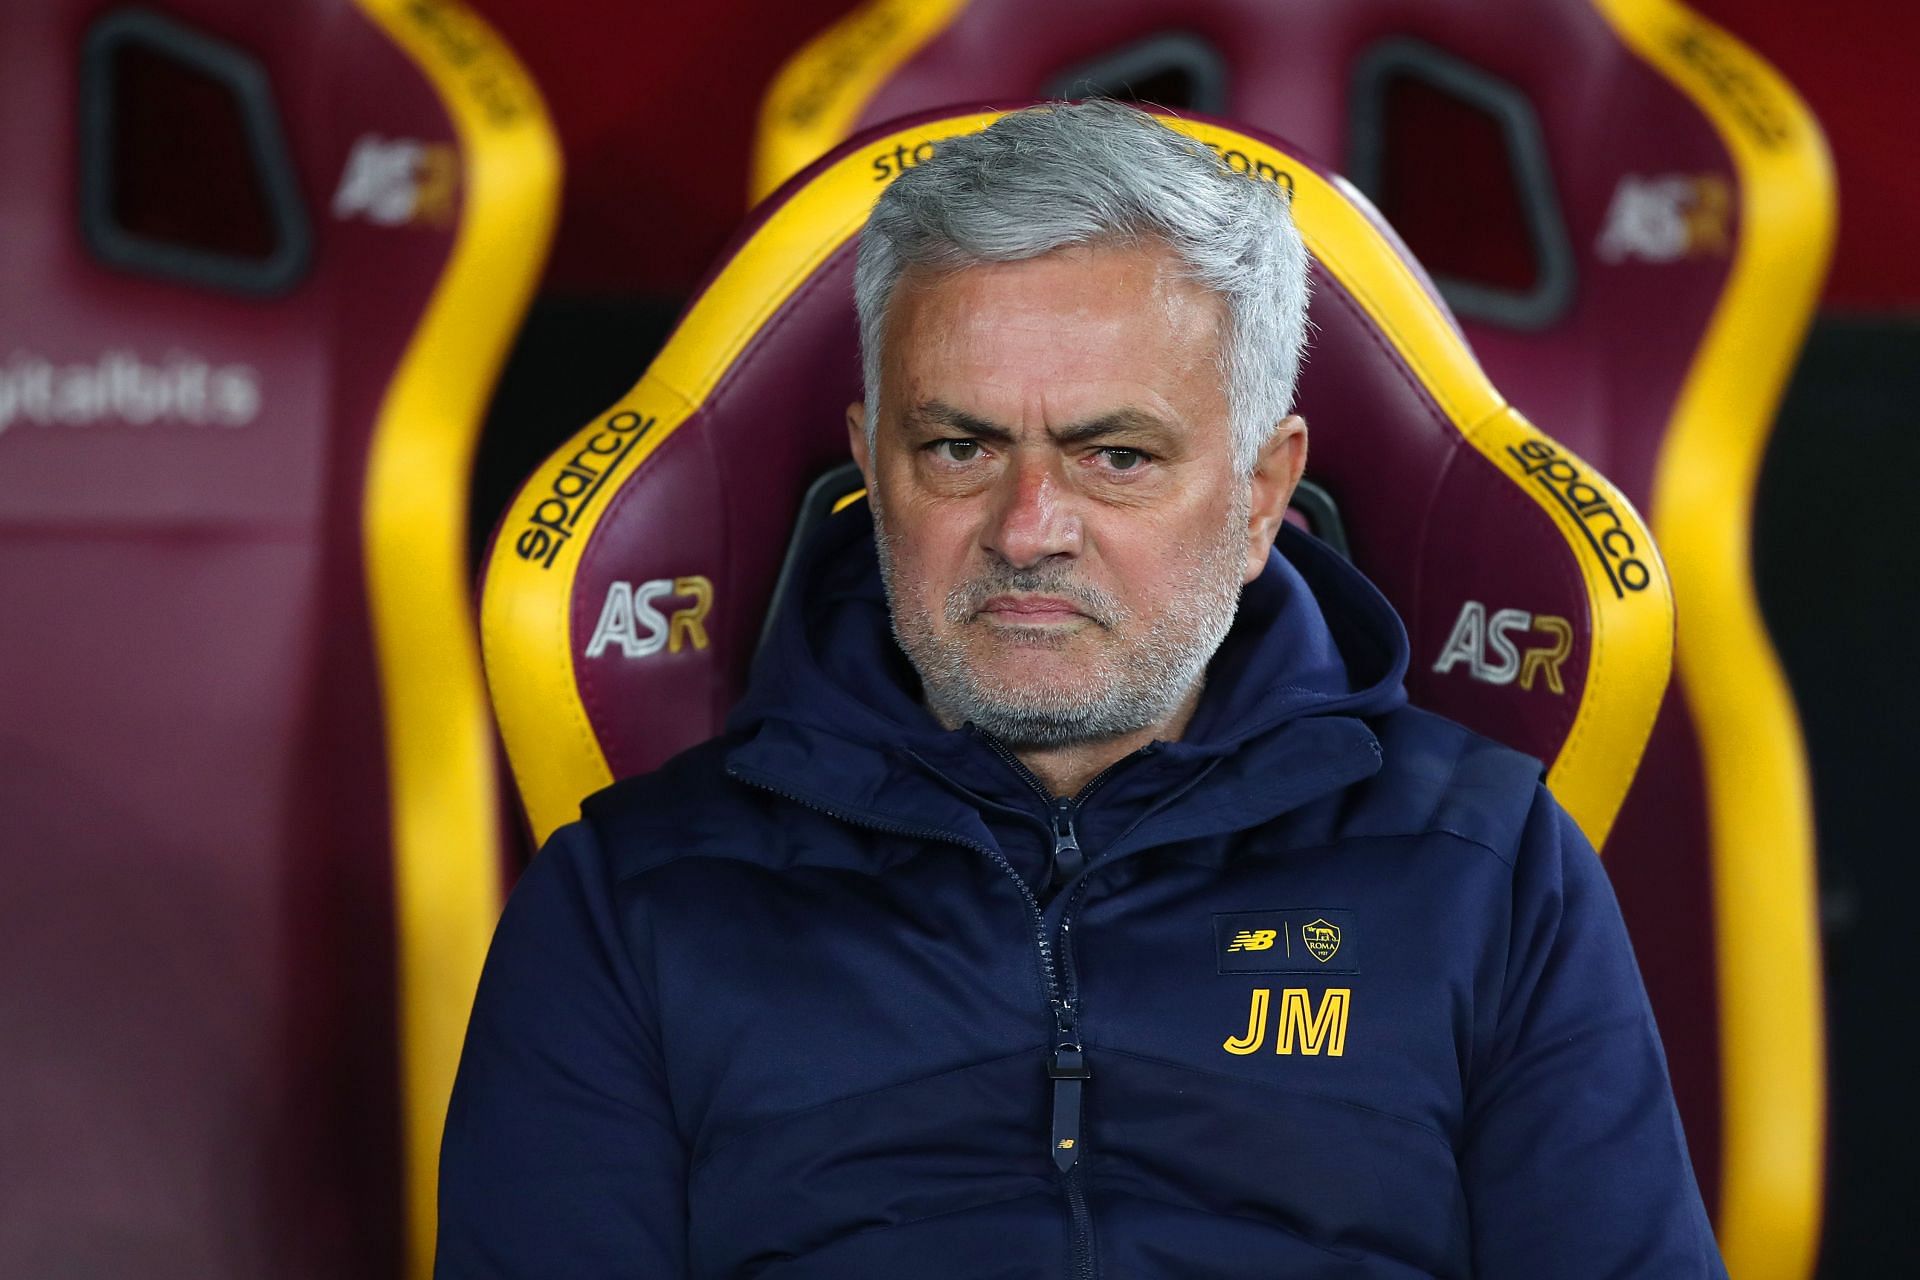 Jose Mourinho has an enviable managerial record.